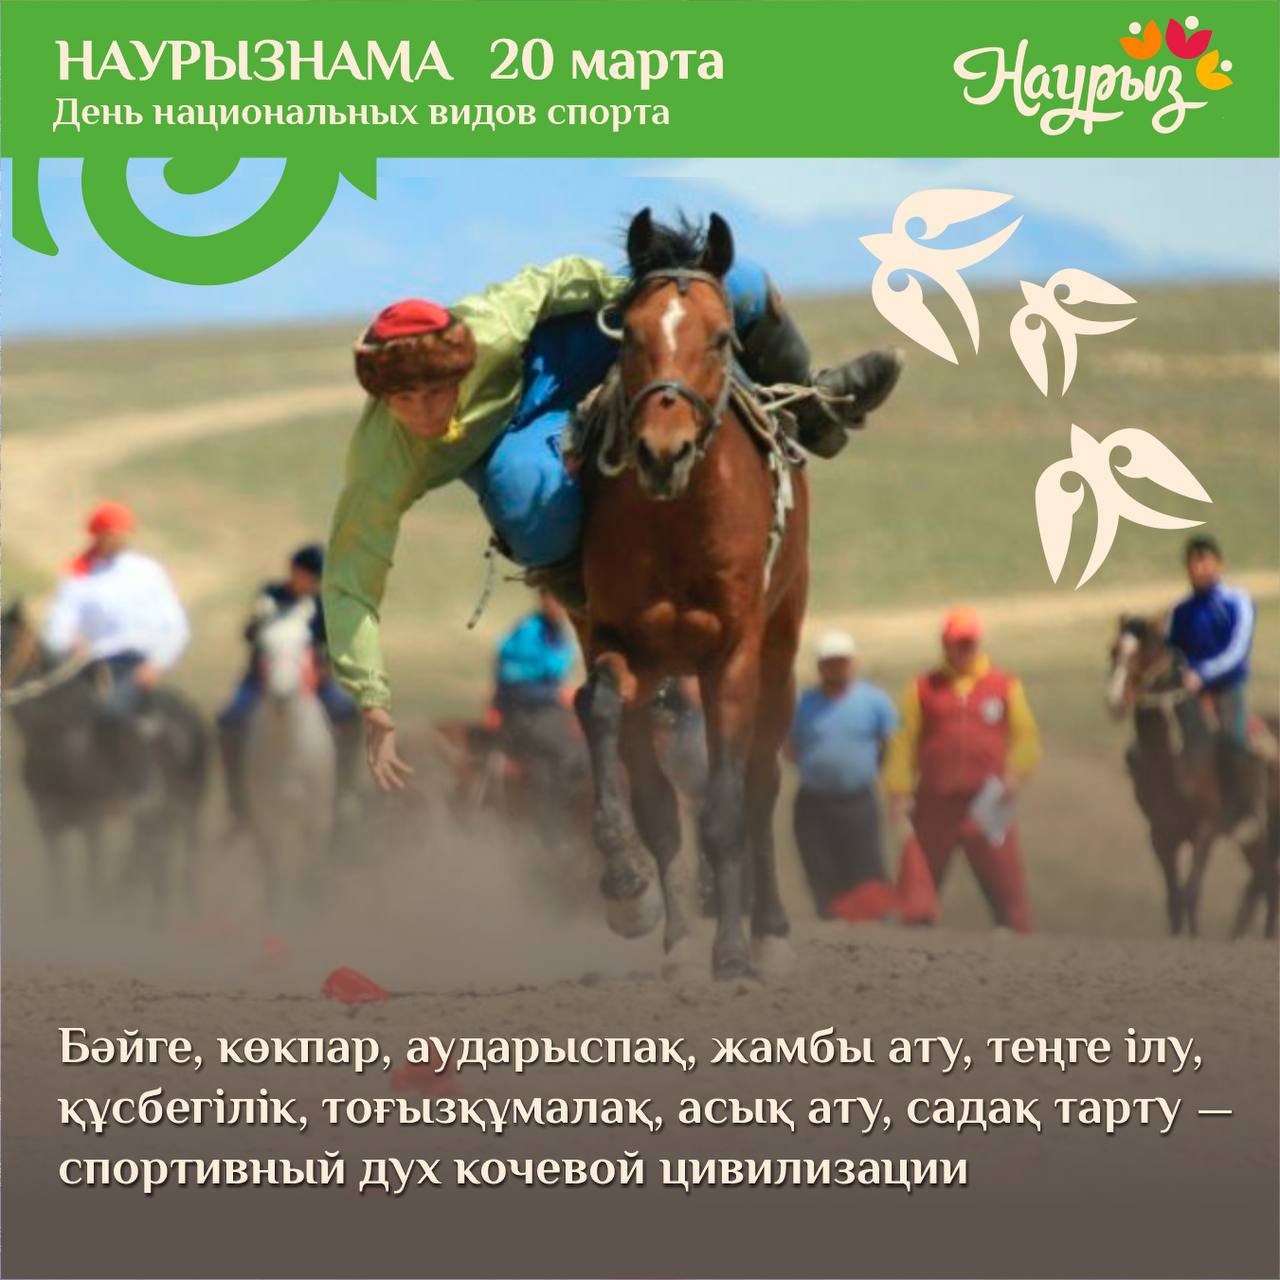 Седьмой день декады Наурызнама в Казахстане - День национальных видов спорта.